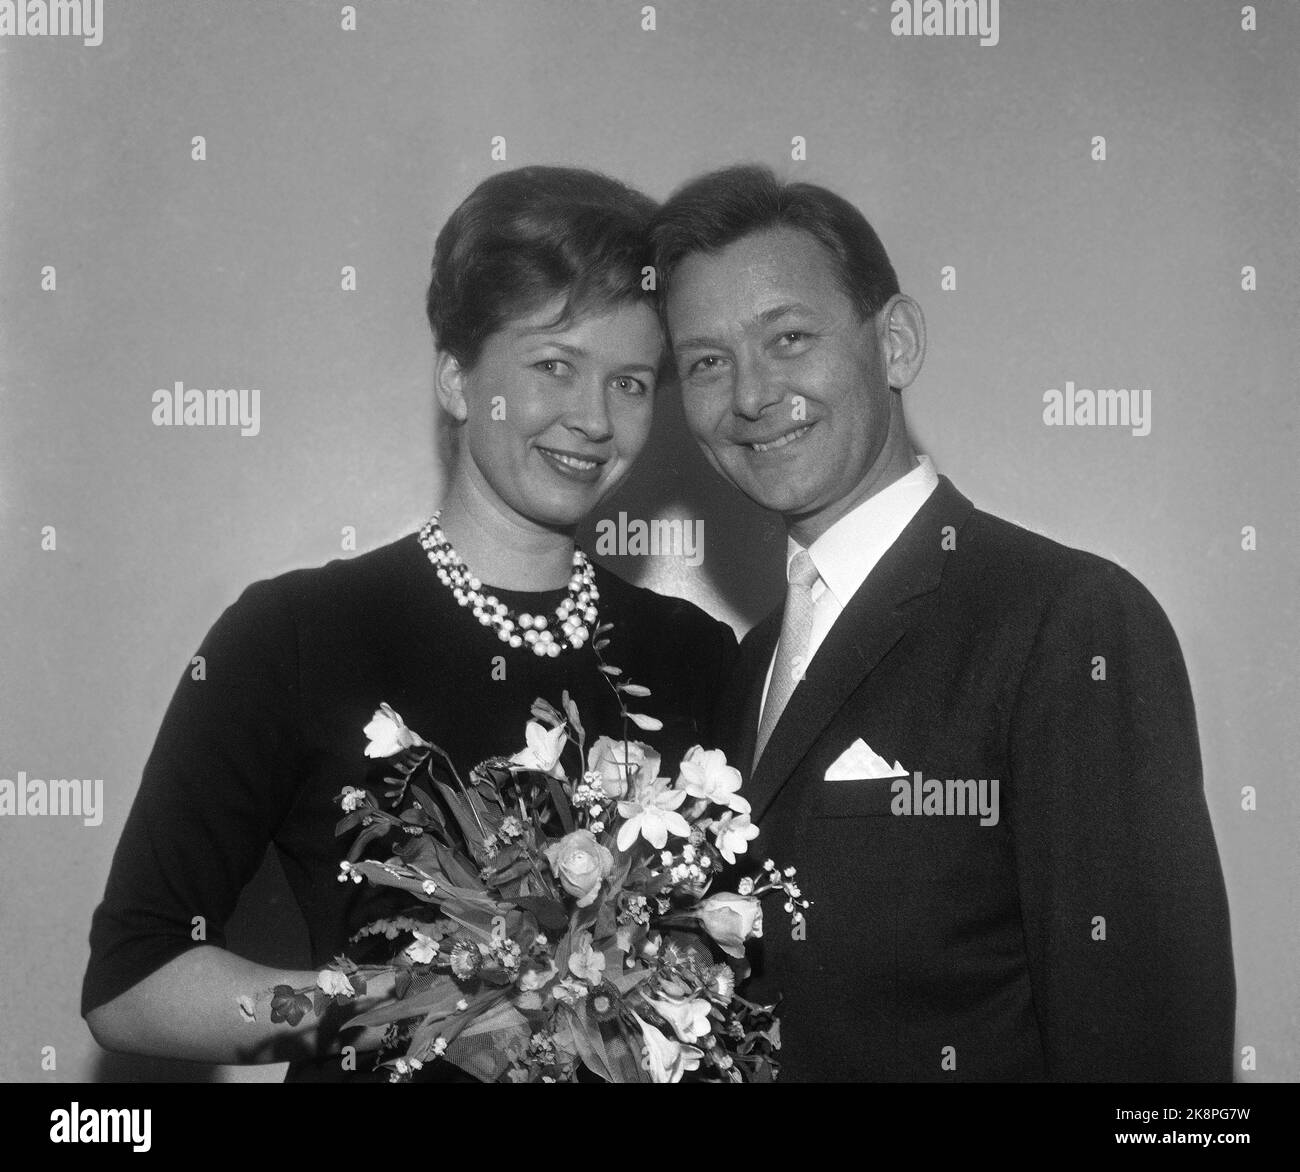 Oslo 19620312 ha vuelto a encontrar el amor en NRK en Marienlyst. Los secretarios de programa Odd Grythe y Ada Haug se están casando. Aquí los dos juntos. Foto: NTB / NTB Foto de stock